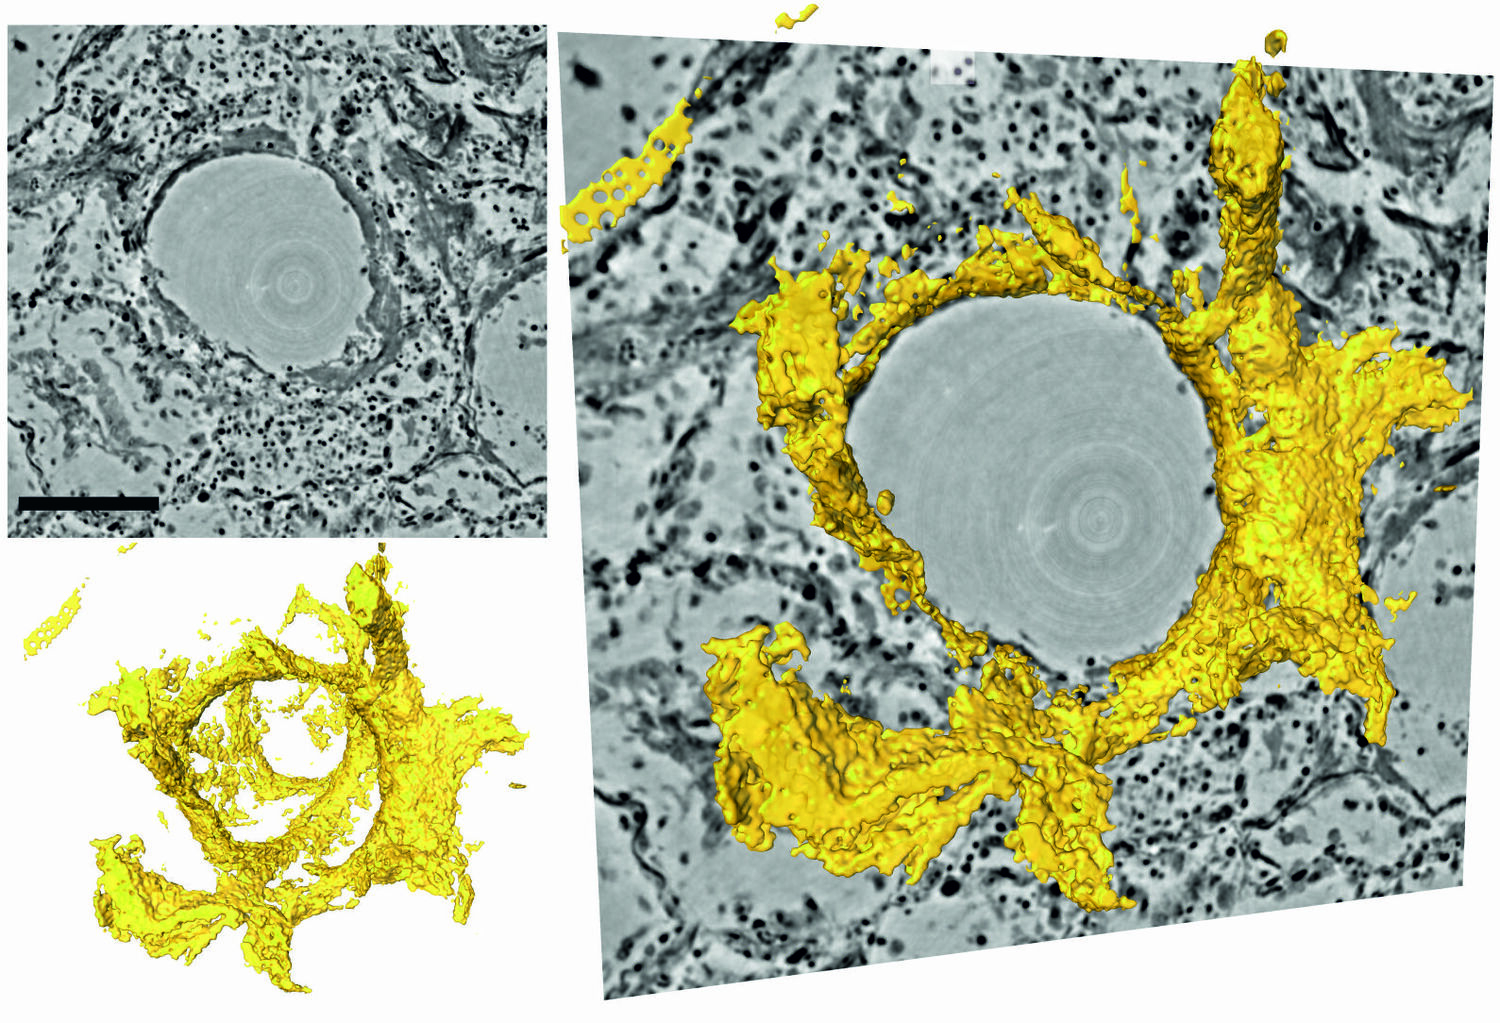 Schnitte durch das dreidimensionale Rekonstruktionsvolumen (links oben, grau) um ein Lungenbläschen mit Hyalinmembran (links unten, gelb), rechts eine Überblendung. Im Zentrum befindet sich das Luftbläschen (Alveole). Die Elektronendichte ist durch unterschiedliche Grautöne dargestellt. An der Innenseite des Luftbläschens schlägt sich eine Schicht aus Proteinen und abgestorbenen Zellenresten nieder, die sogenannte Hyalinmembran. Diese Ablagerung, die durch das neue Verfahren erstmals in ihrer dreidimensionalen Struktur dargestellt werden kann, reduziert den Gasaustausch und führt zu Atemnot.